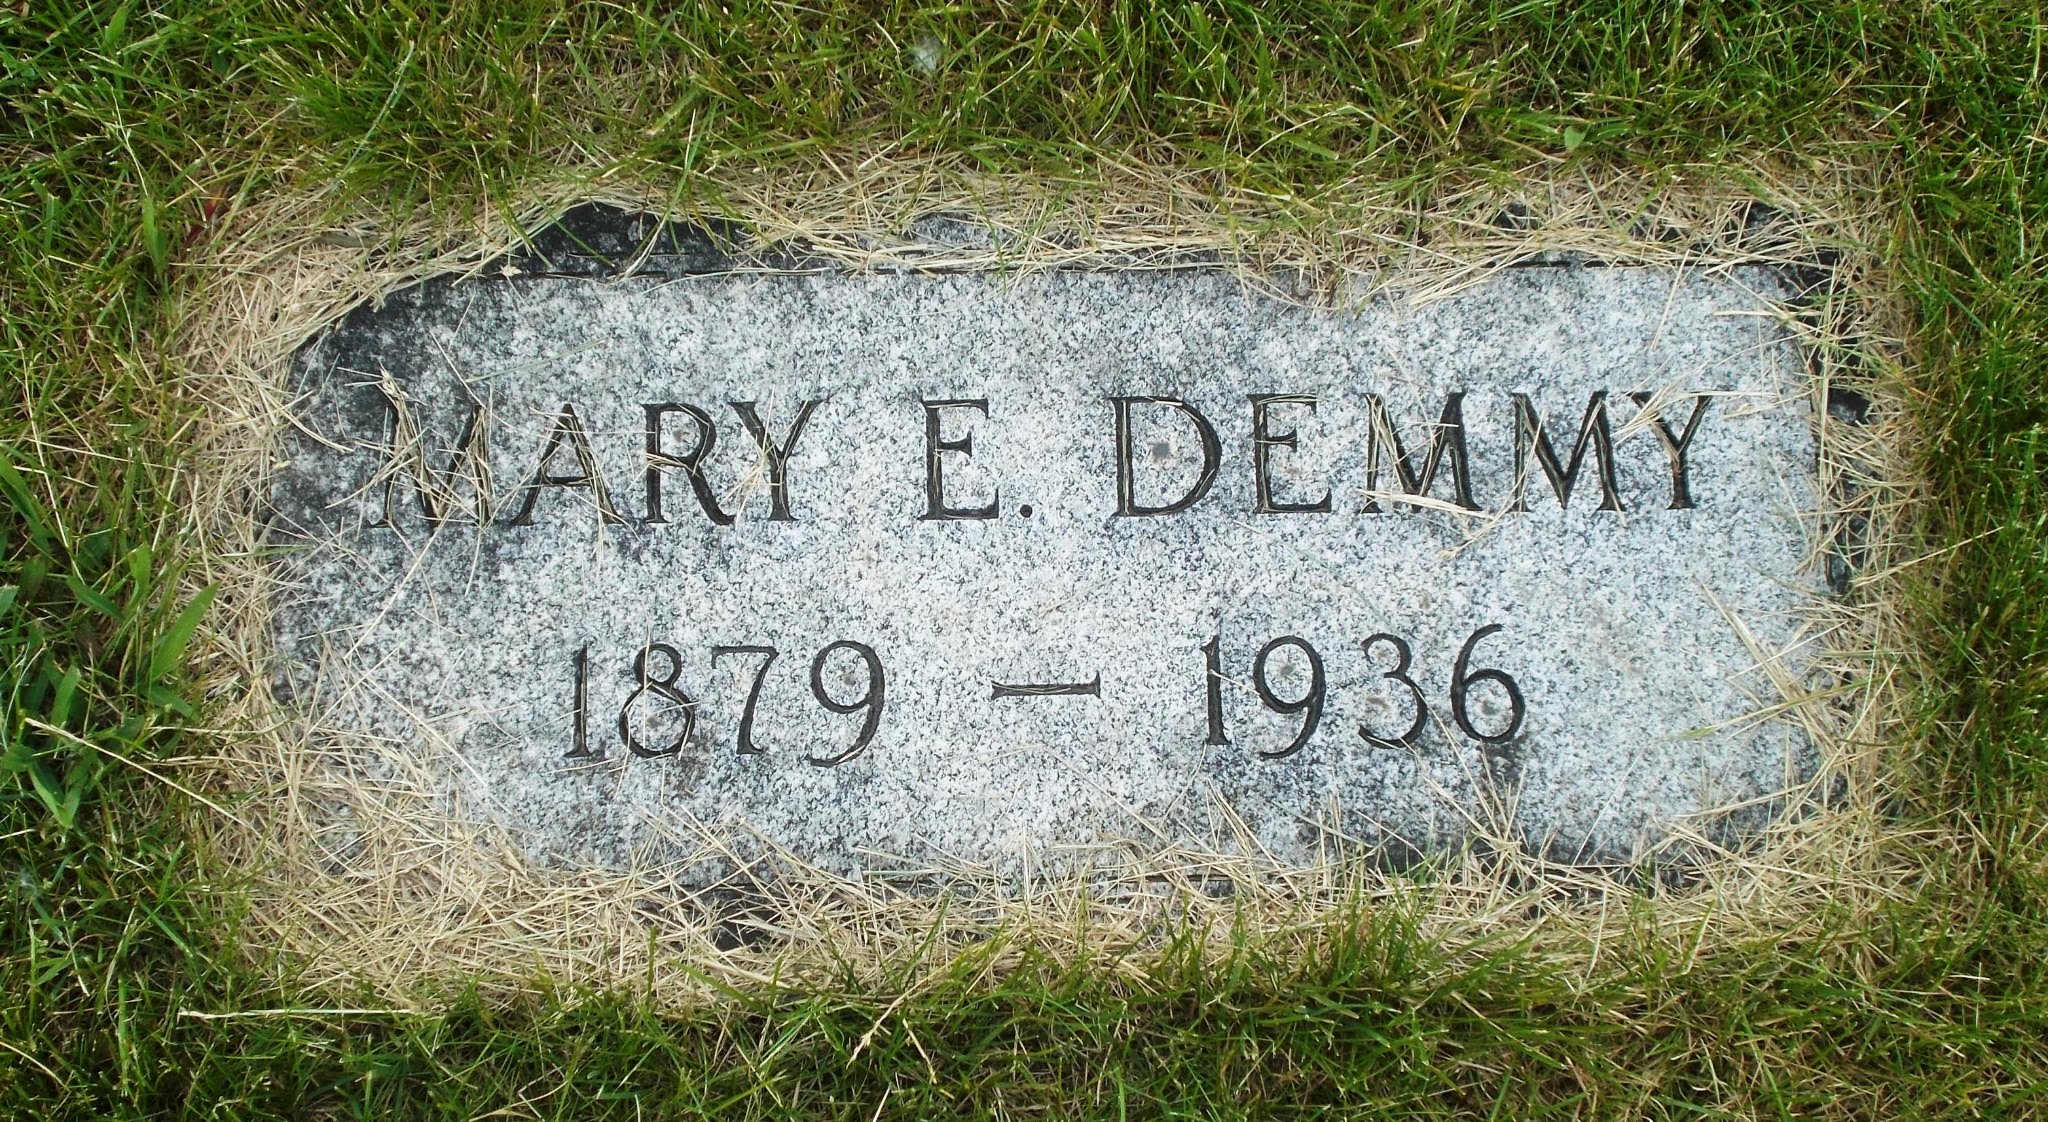 Mary E Demmy